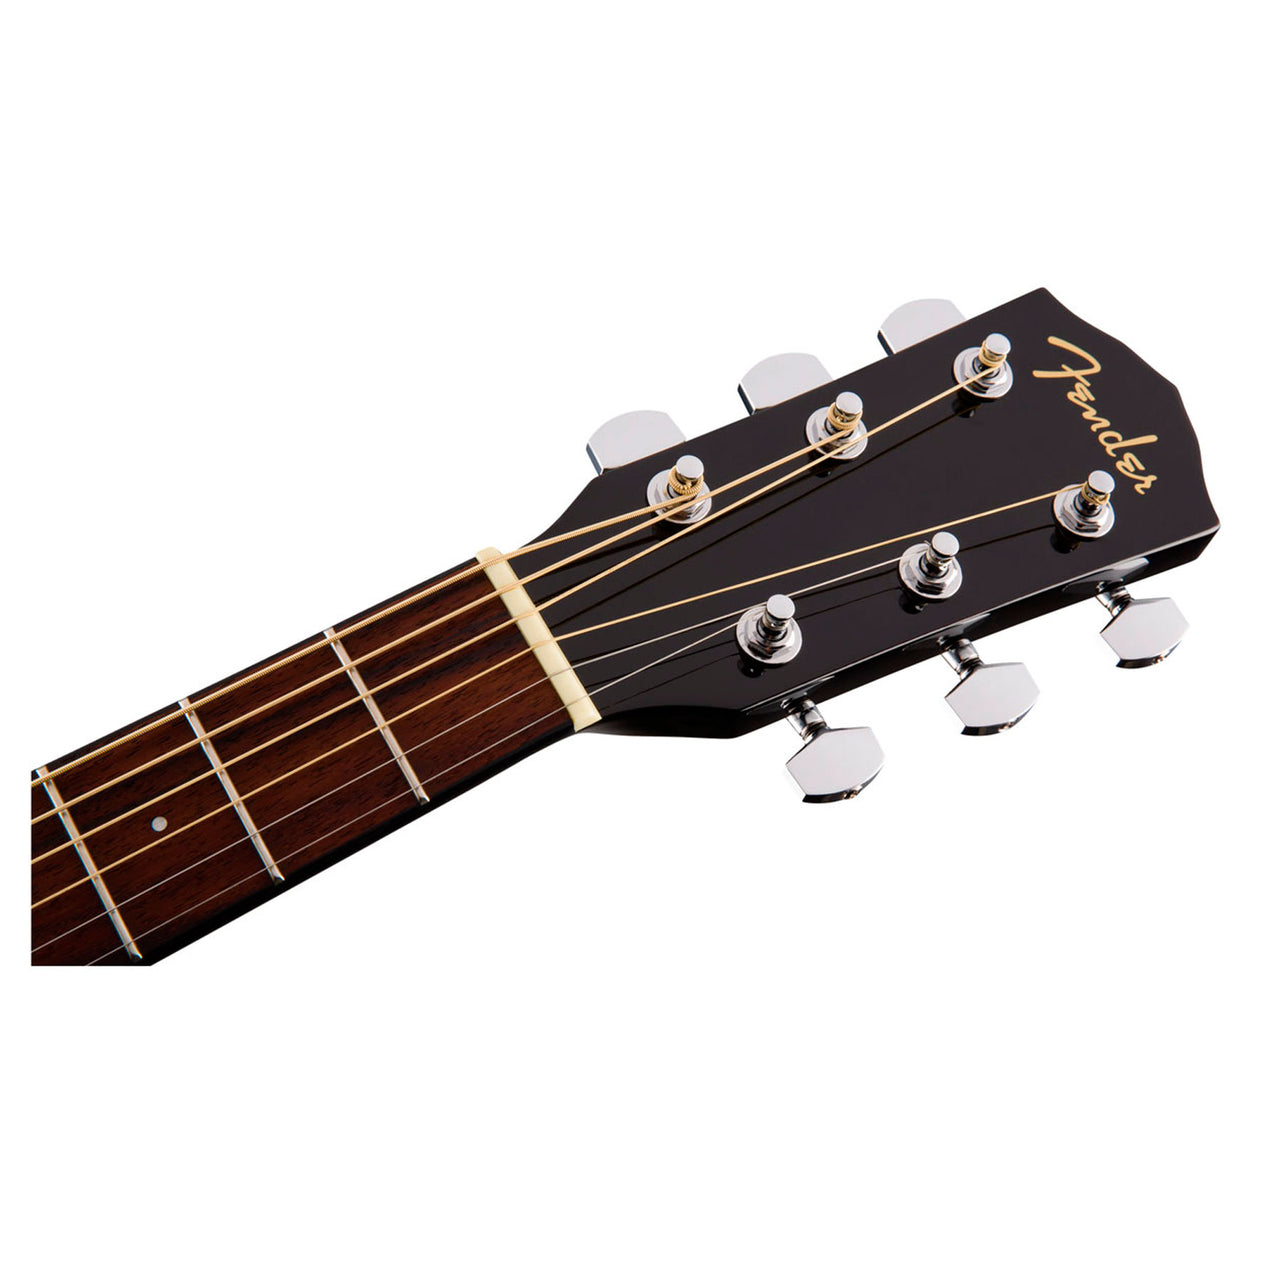 Guitarra Acústica Fender CT-60S Travel Black Wn 0970170006